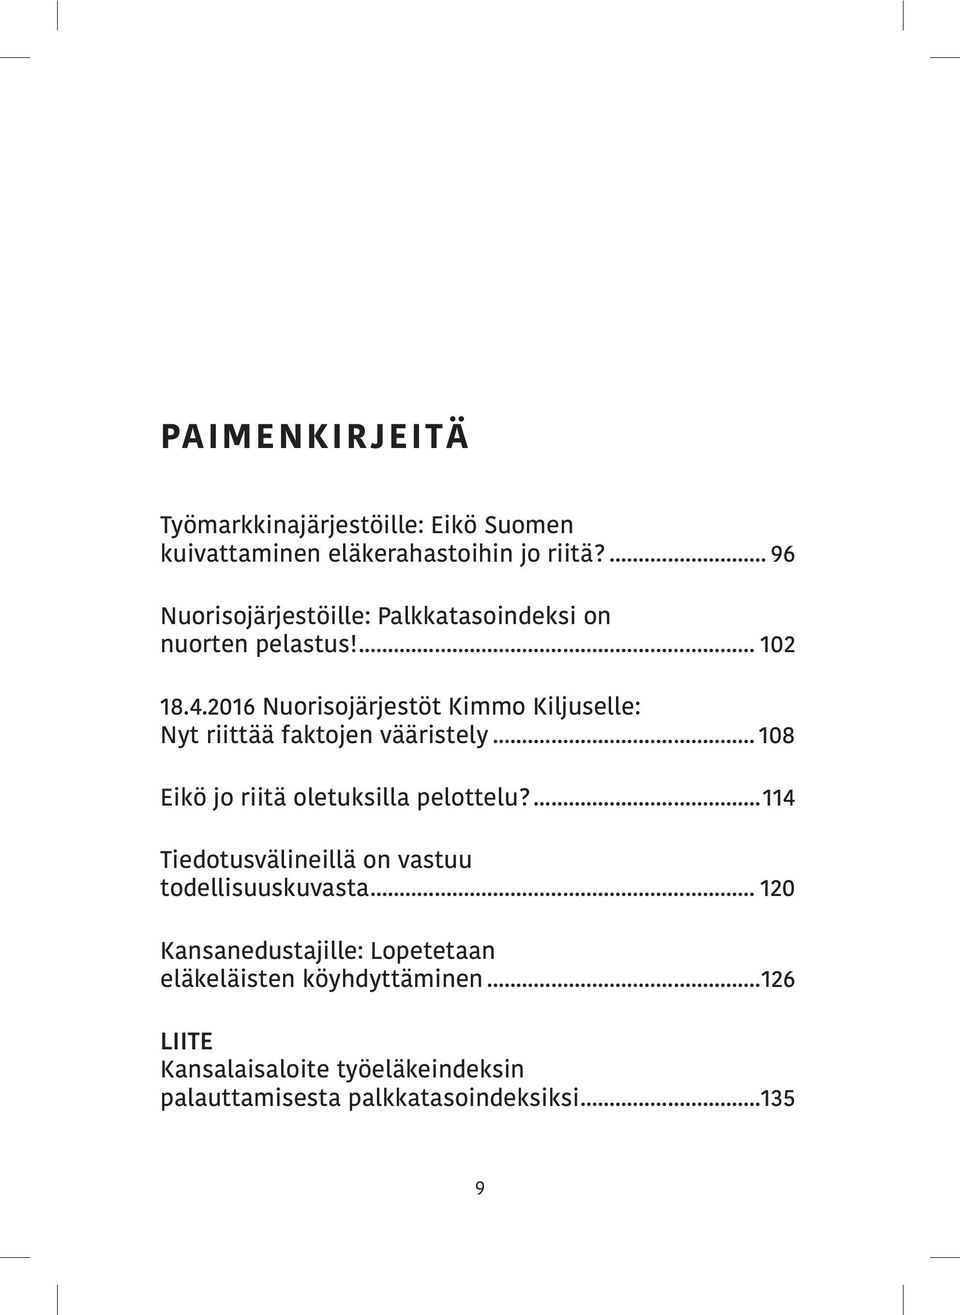 2016 Nuorisojärjestöt Kimmo Kiljuselle: Nyt riittää faktojen vääristely... 108 Eikö jo riitä oletuksilla pelottelu?